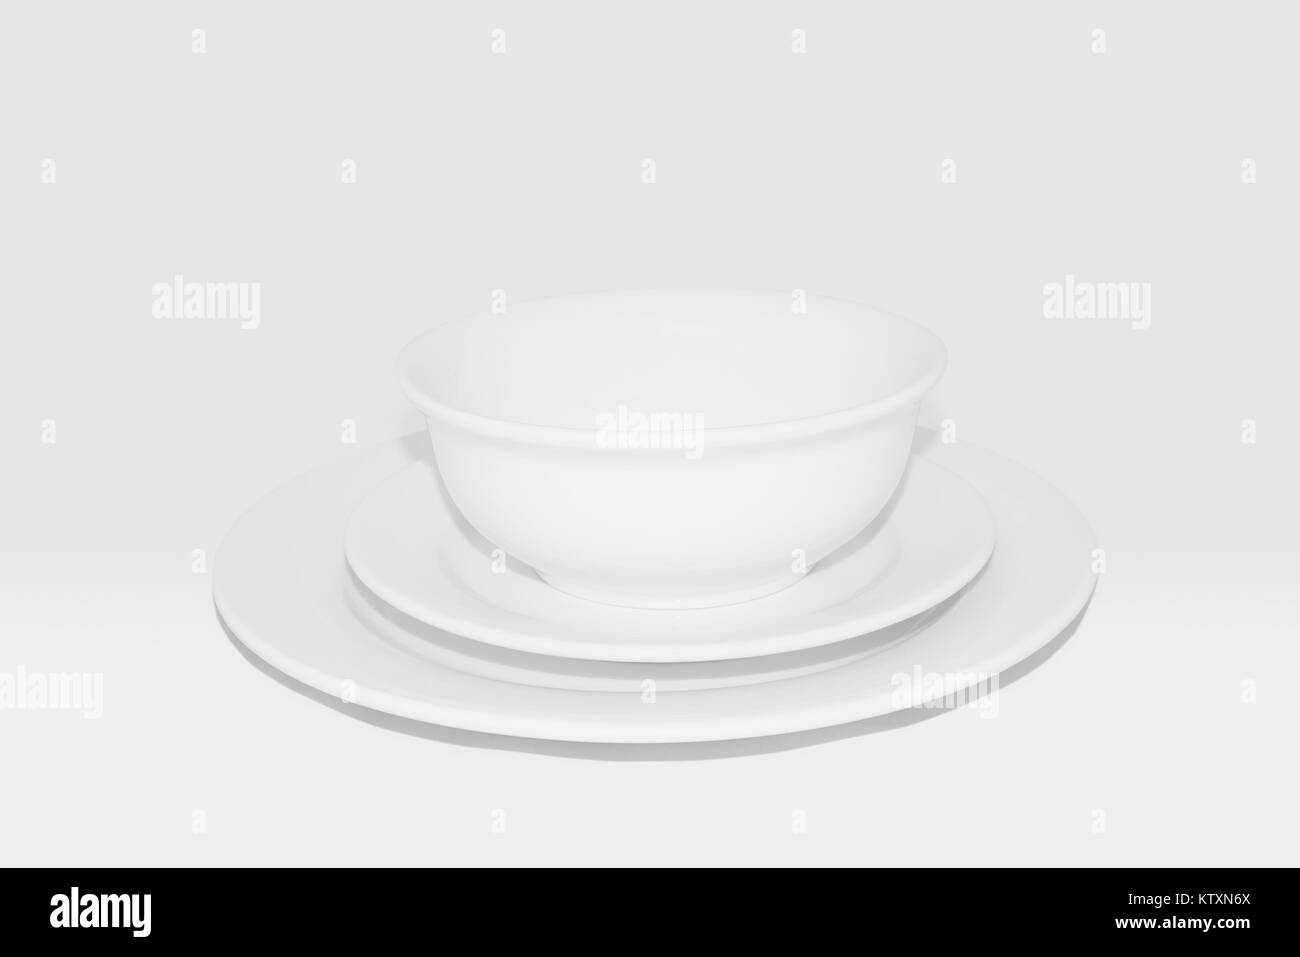 Geschirr Set inkl. Teller, seitliche Platte und die Schüssel: weißes Geschirr vor einem weißen Hintergrund, 100% Graustufen. Stockfoto